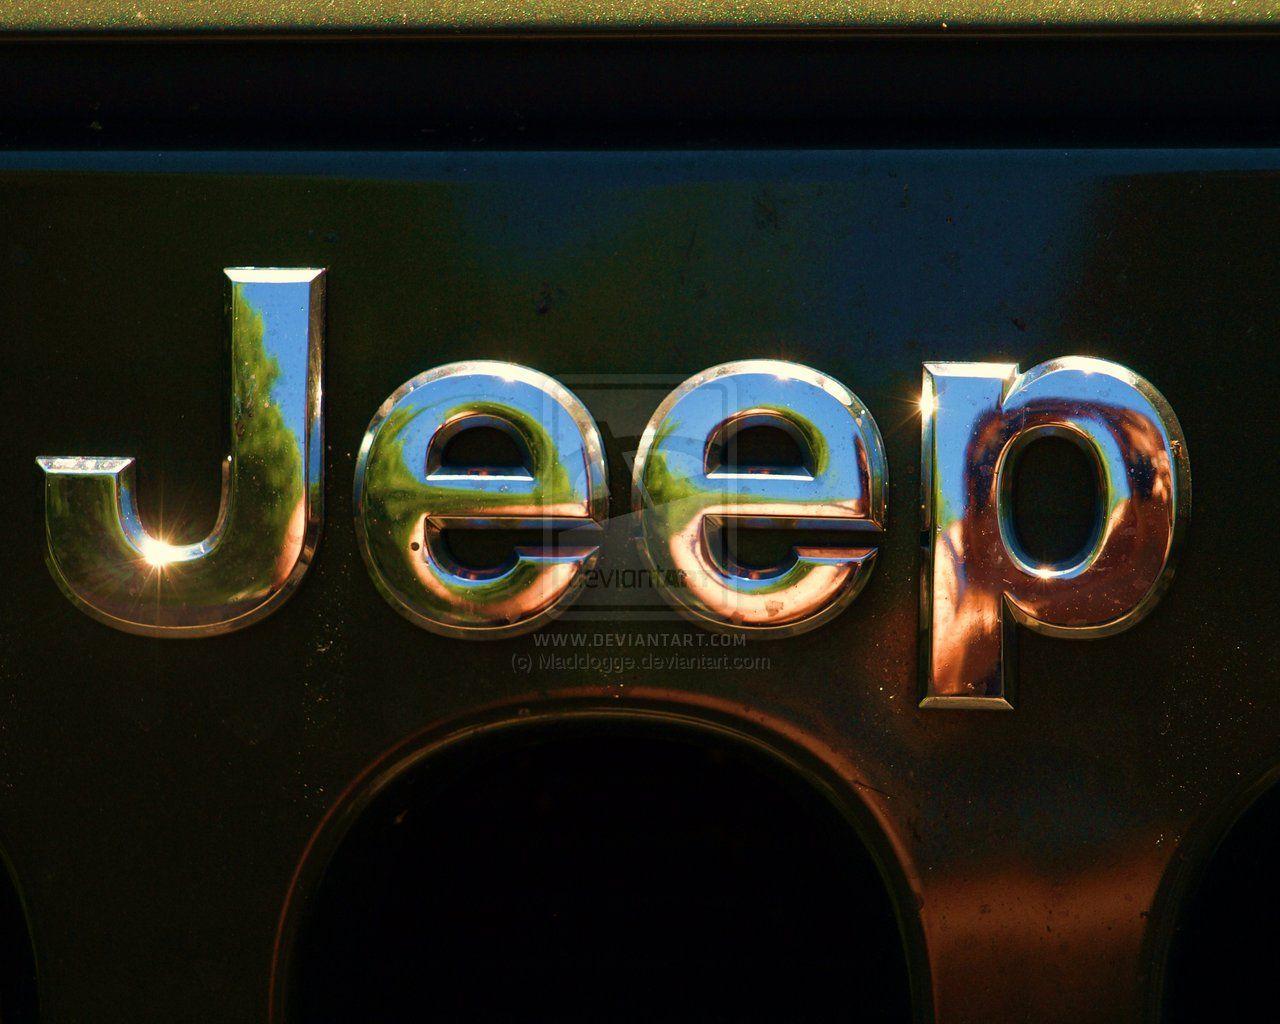 1280x1024 Tải xuống miễn phí để hiển thị hình nền logo xe jeep